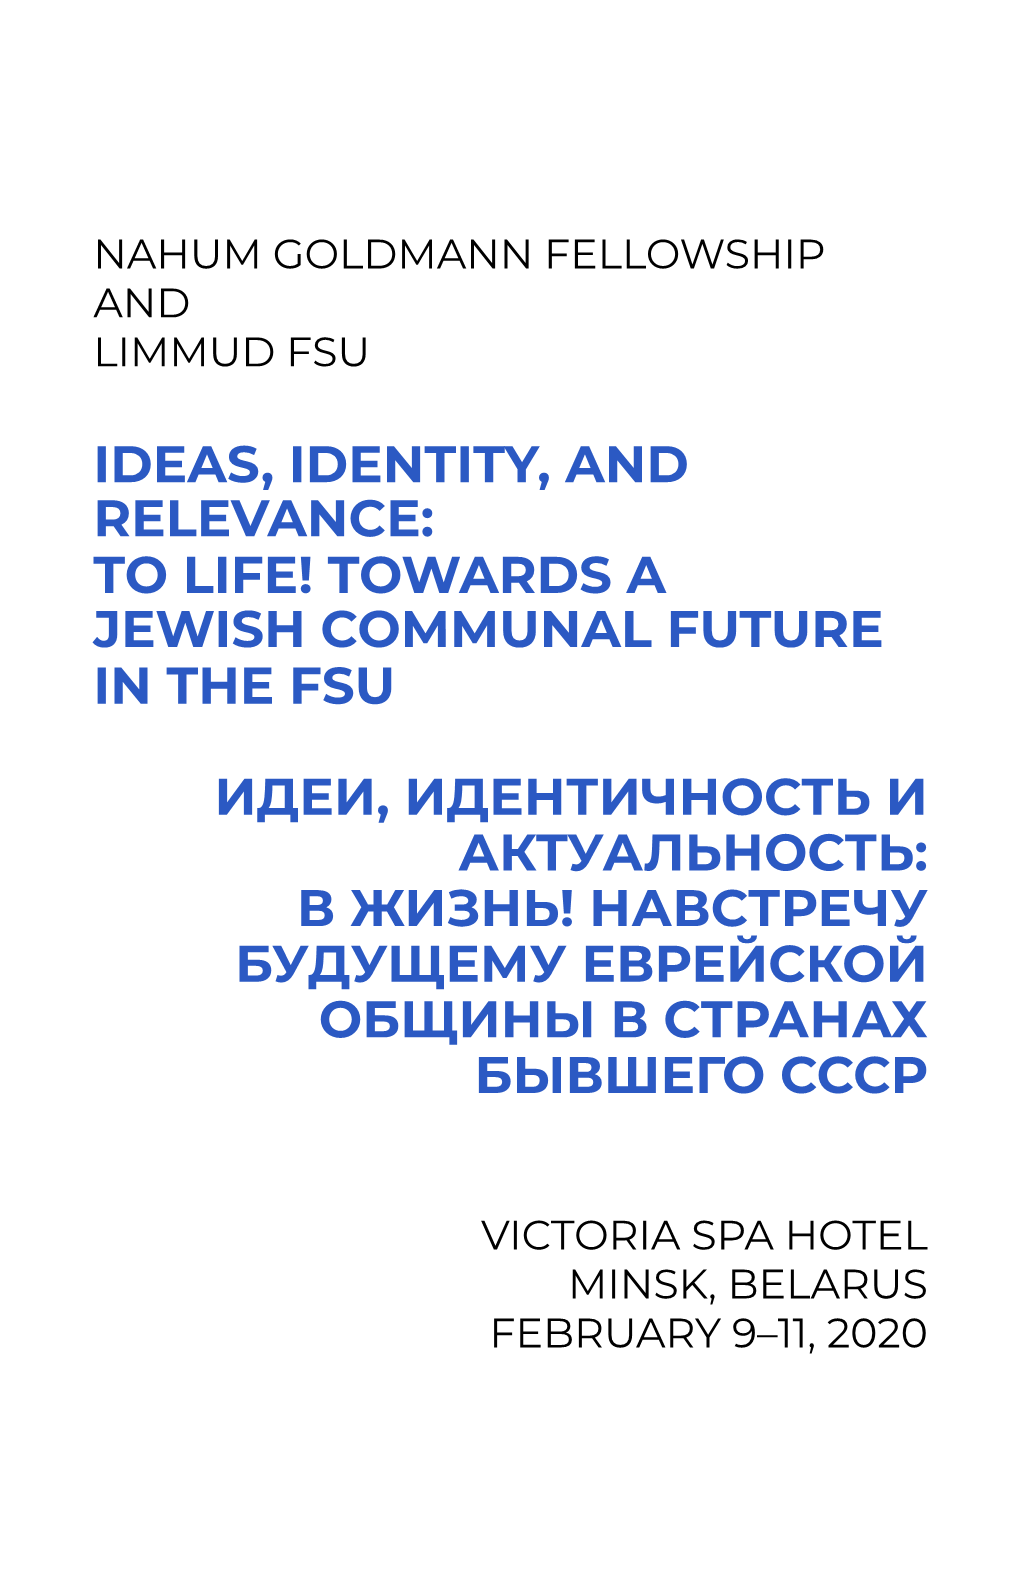 Towards a Jewish Communal Future in the Fsu